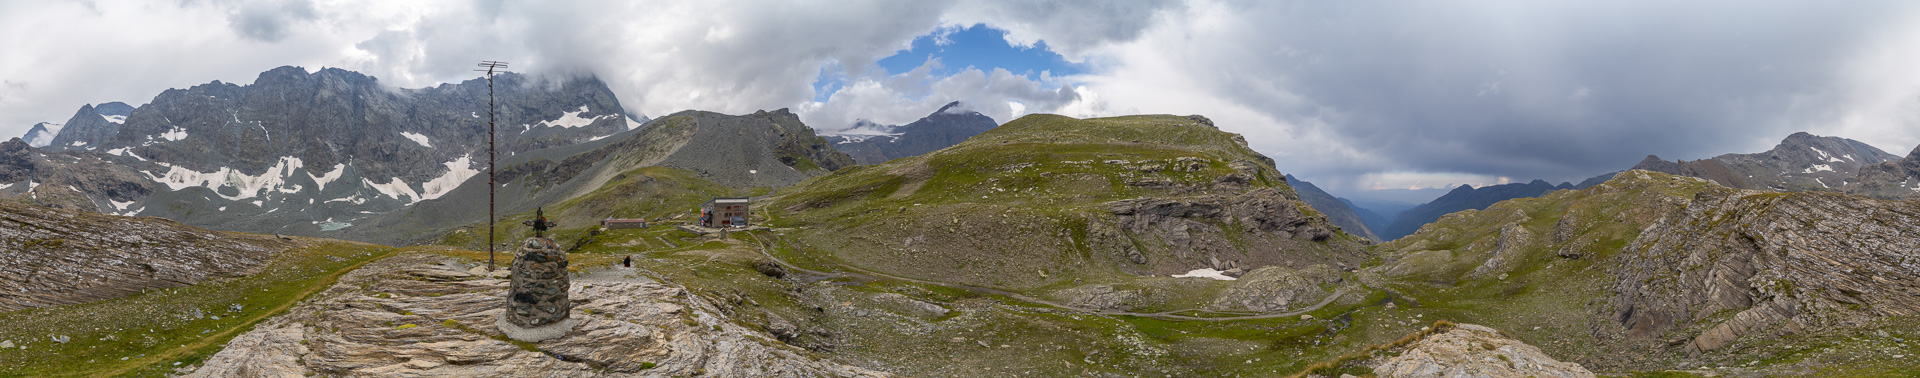 Einige der hohen Berge der Vanoise und die Uja di Ciamarella zeigen sich im Hüttenpanorama.